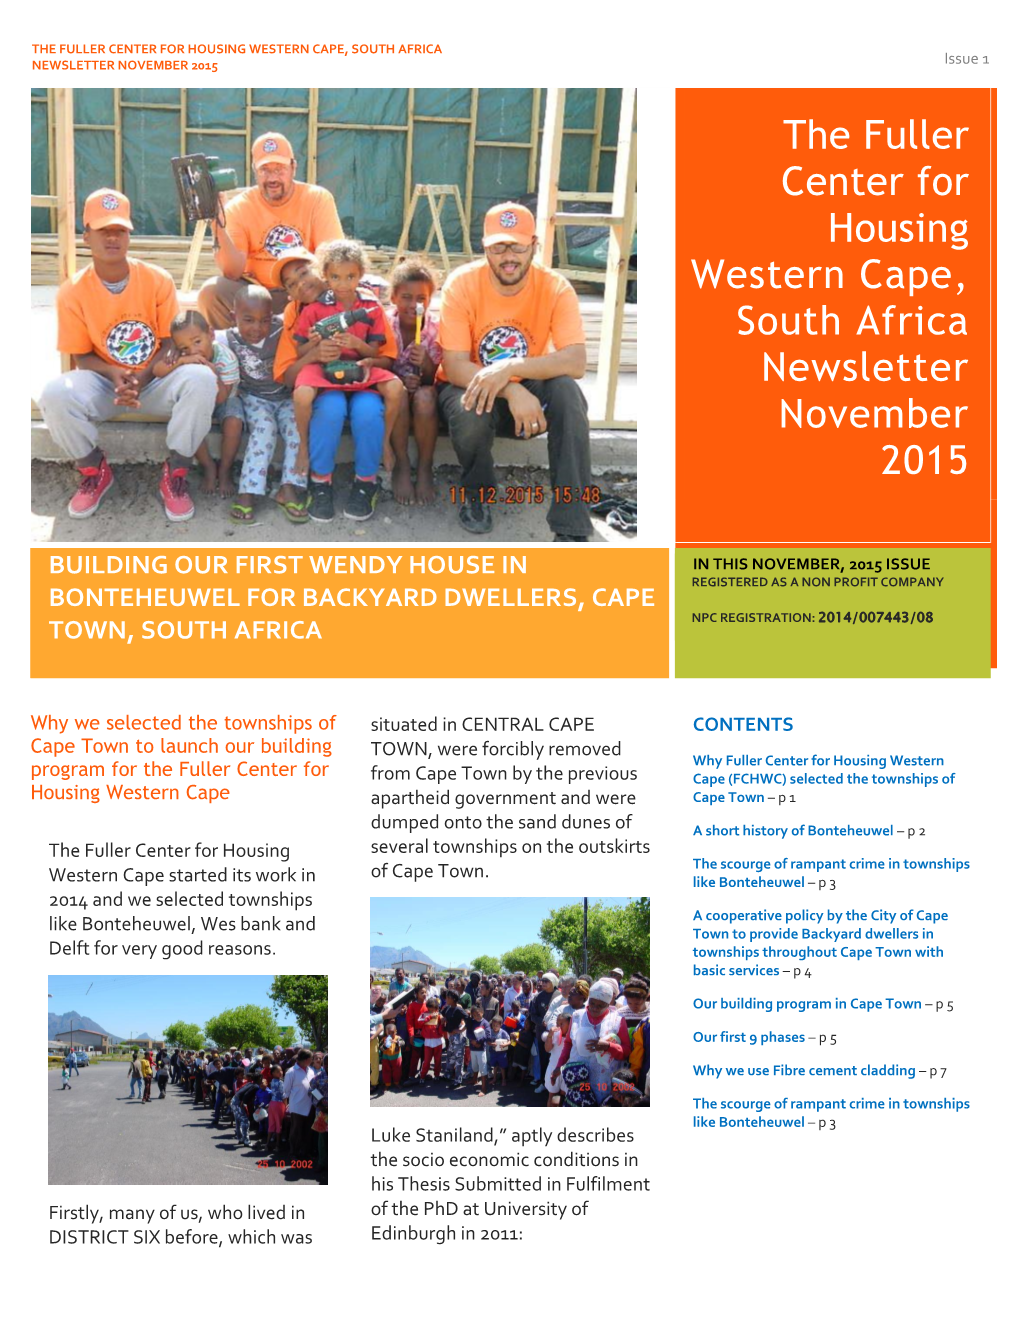 THE FULLER CENTER for HOUSING WESTERN CAPE, SOUTH AFRICA NEWSLETTER NOVEMBER 2015 Issue 1